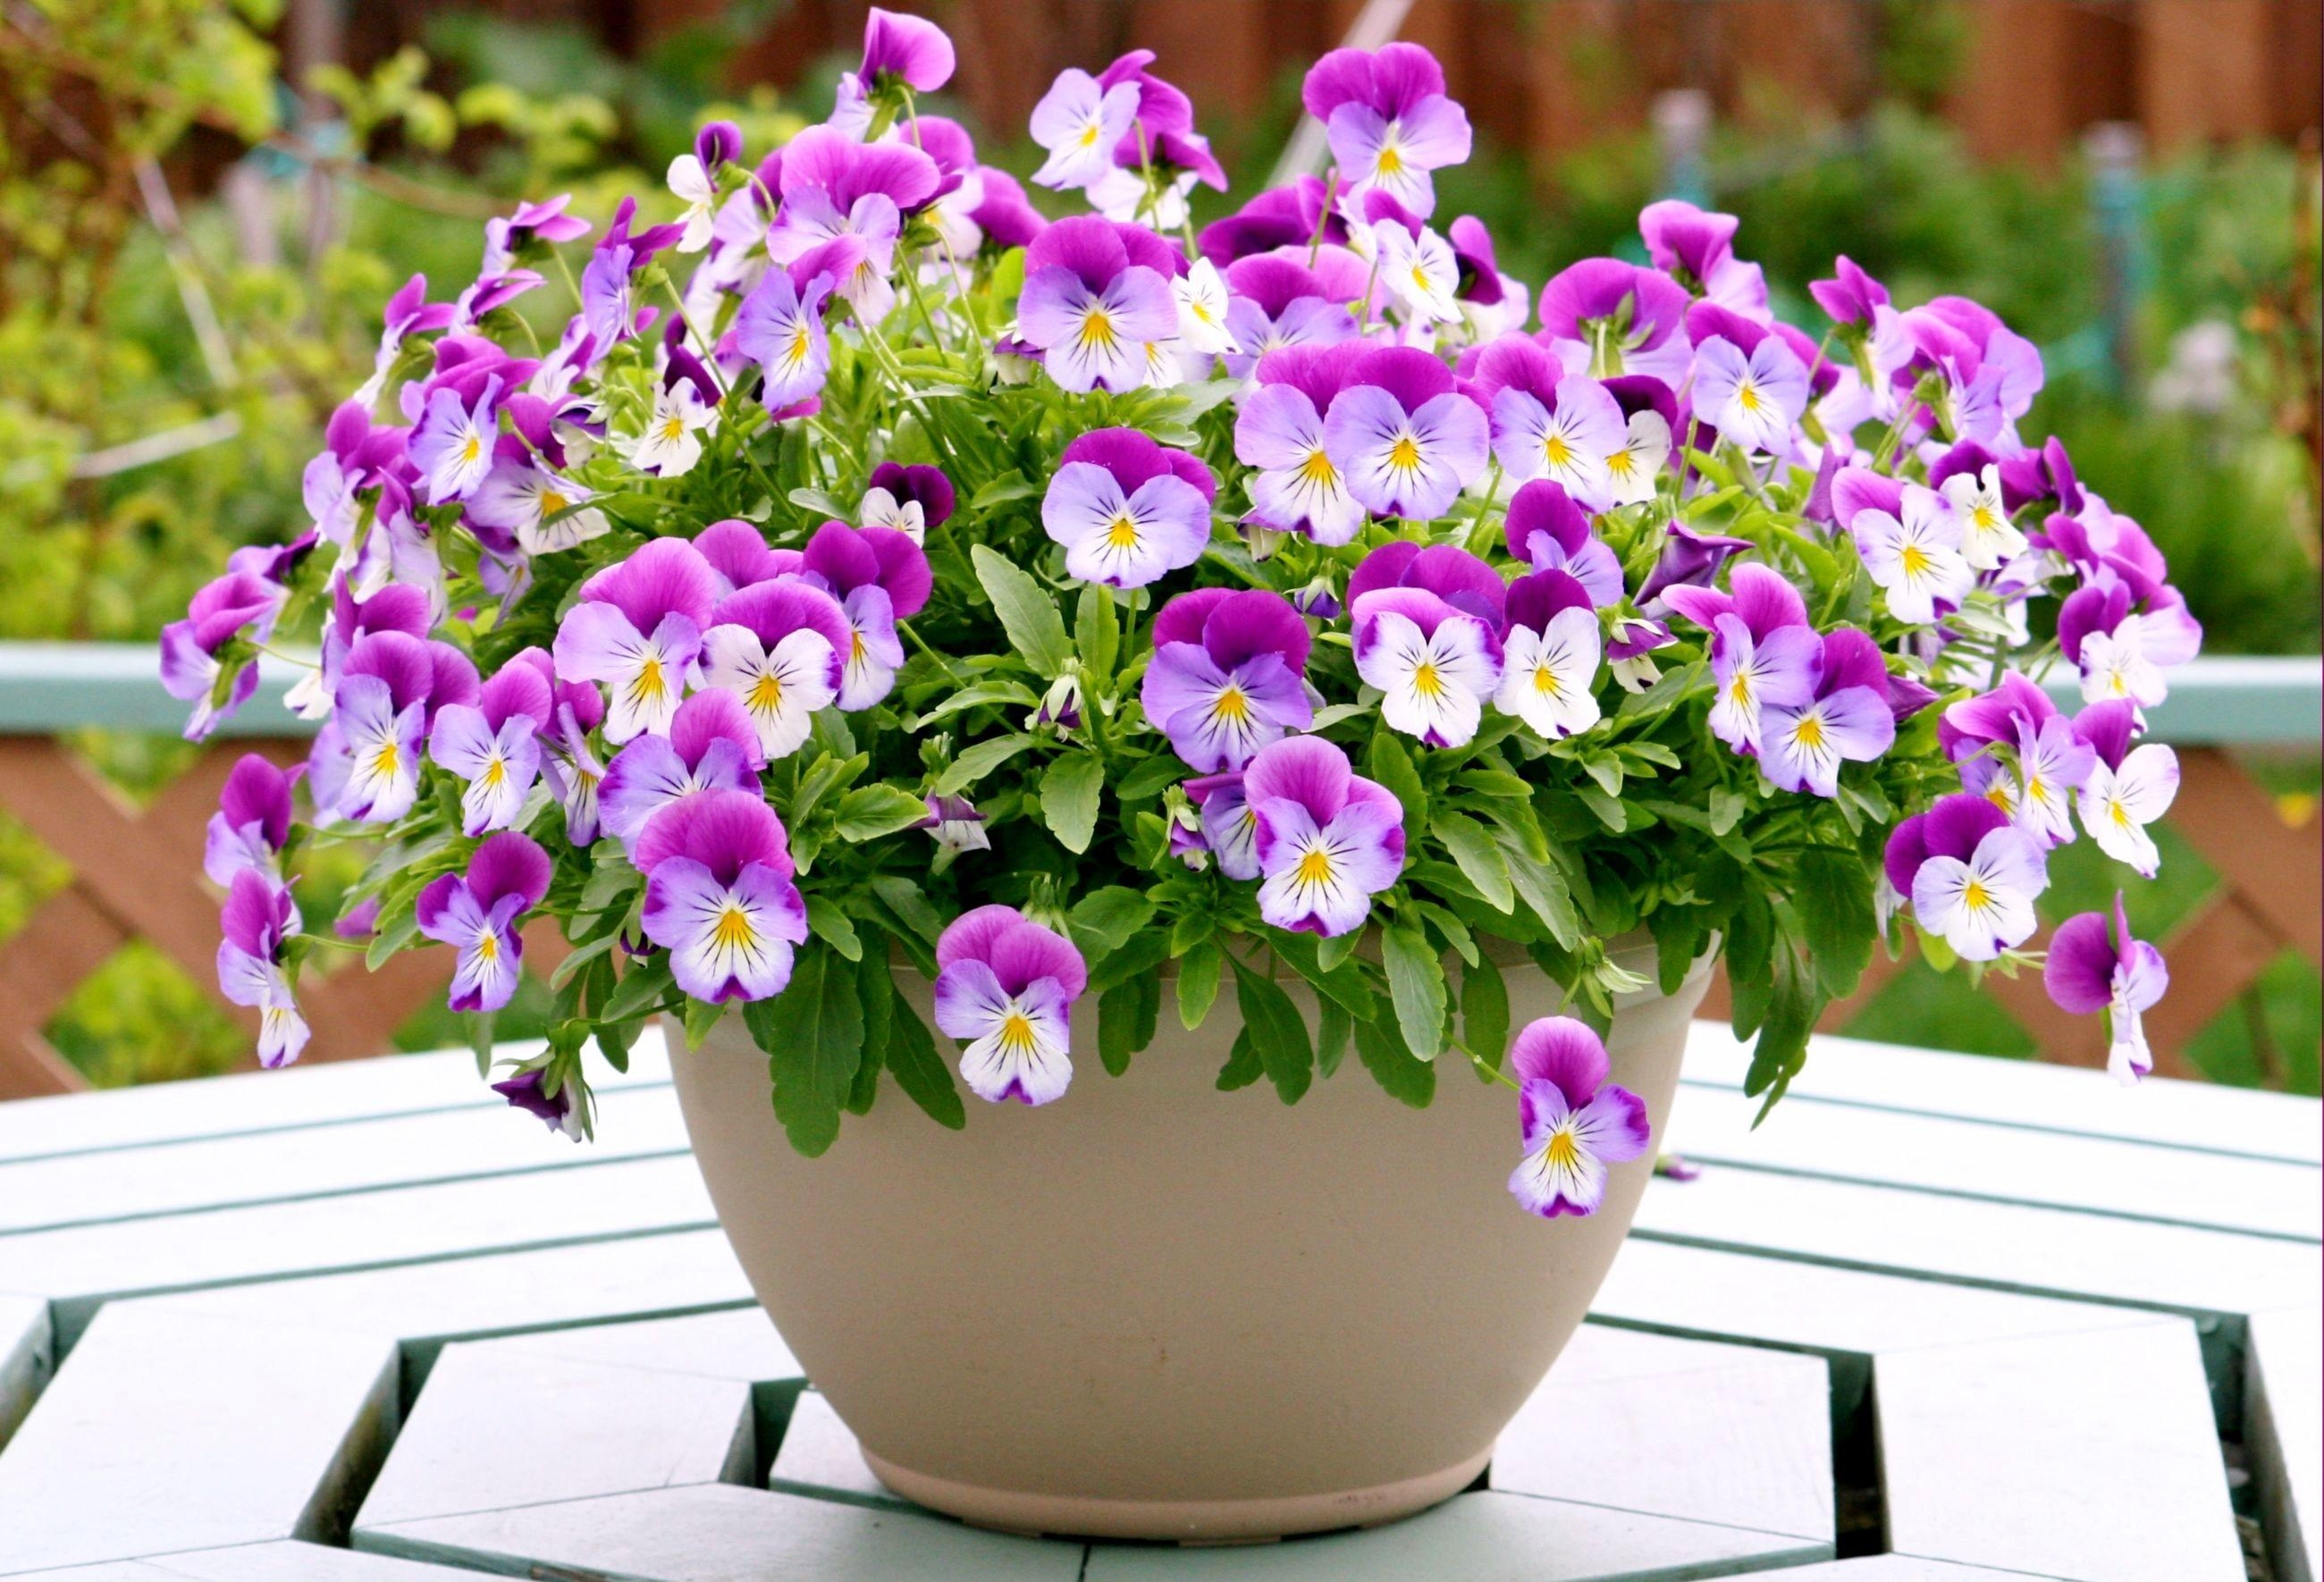 1080p pic table, flowers, plant pot, pots